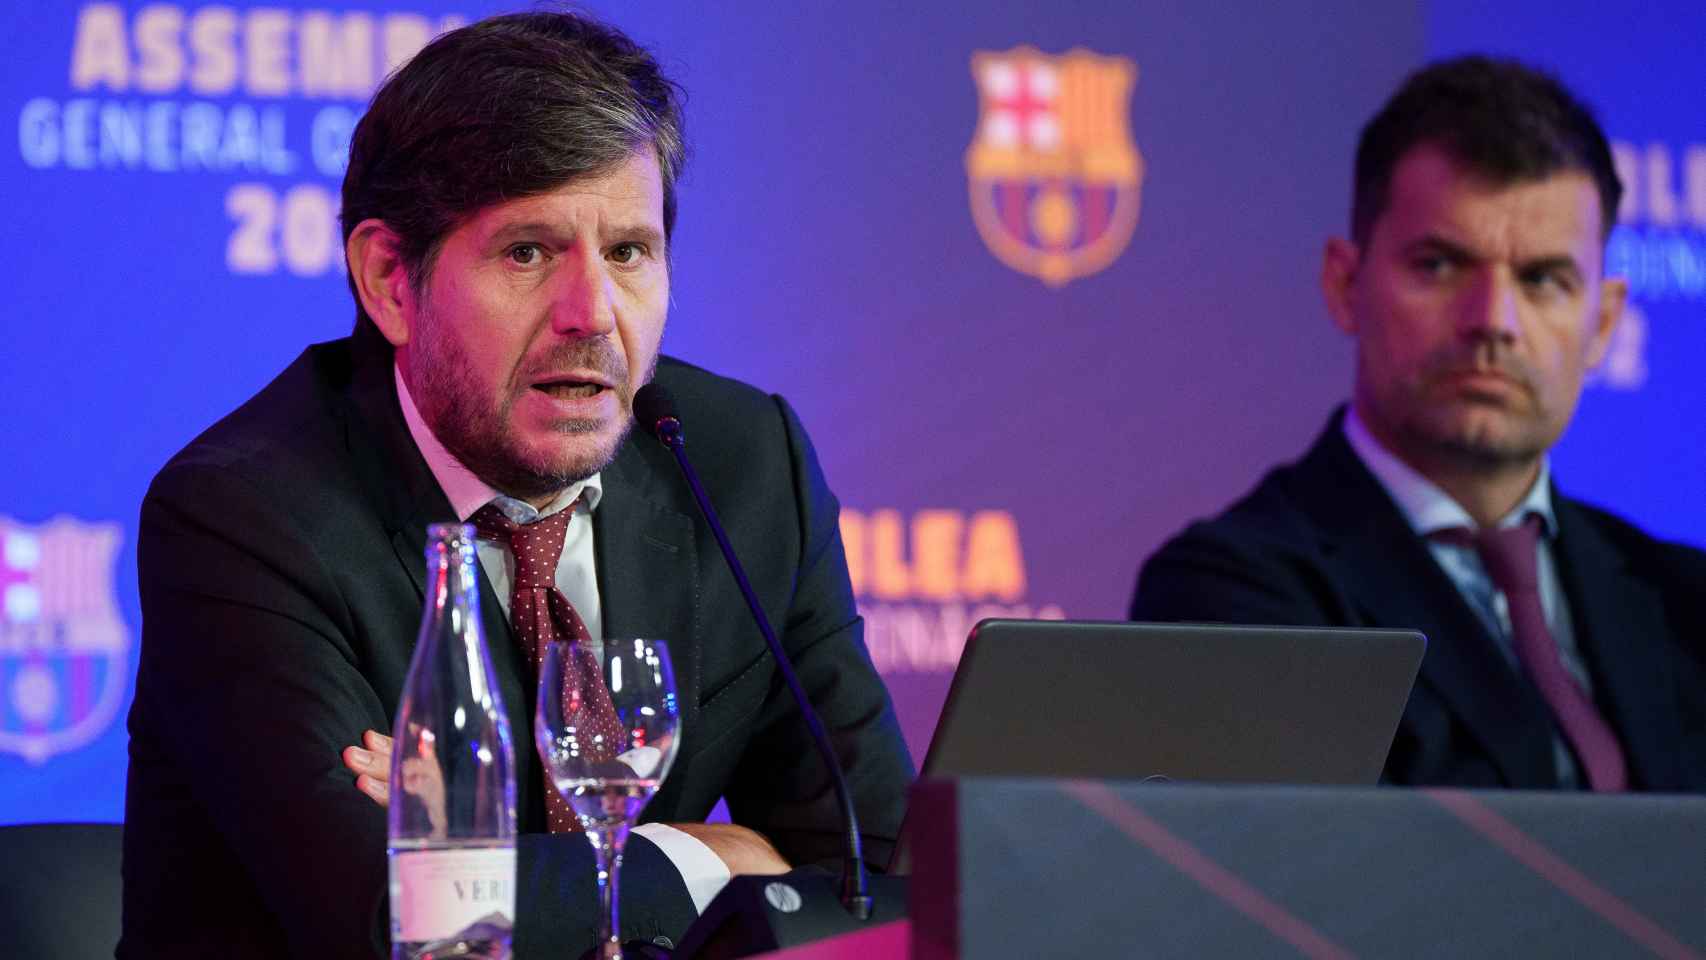 Mateu Alemany, en la asamblea de socios compromisarios del Barça del ejercicio 21-22 / FCB